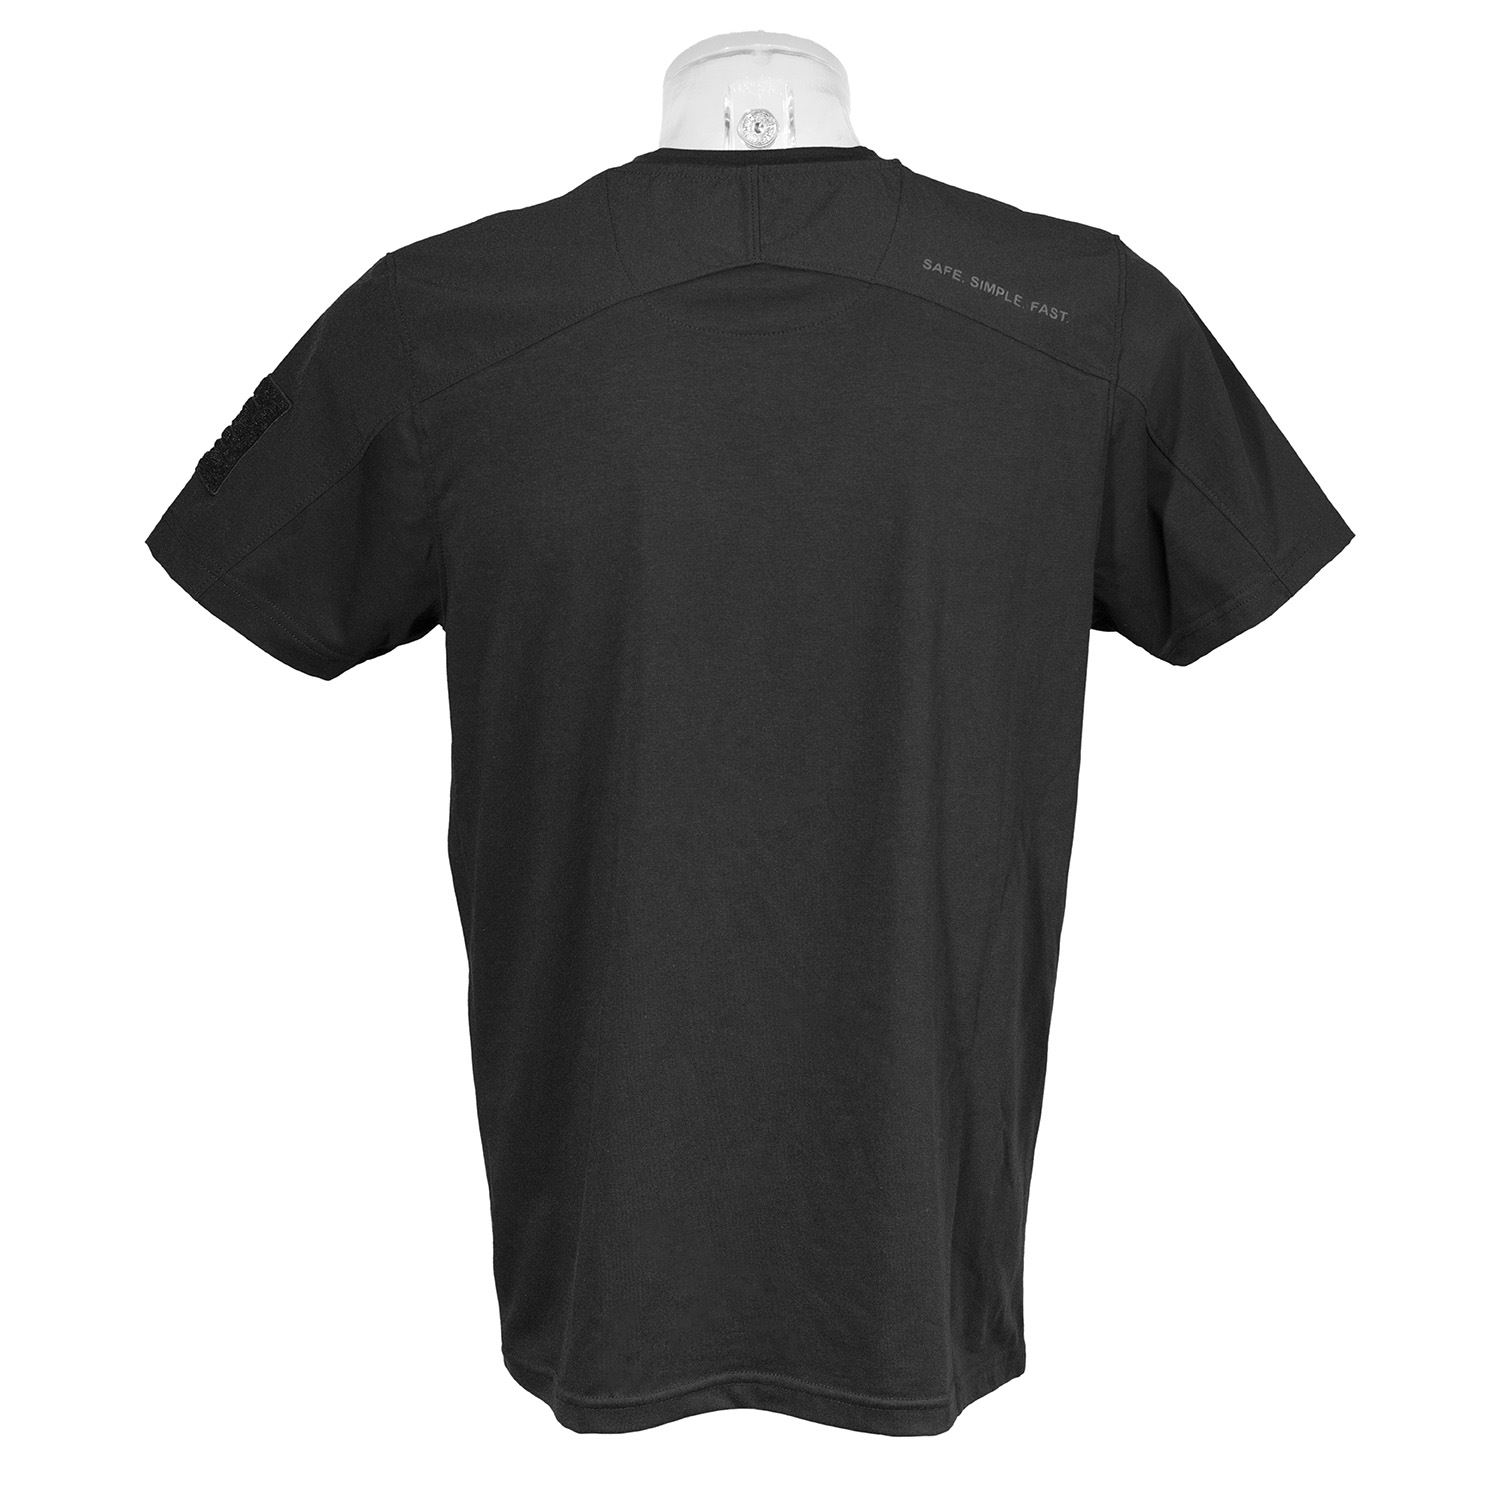 GLOCK Tactical T-Shirt Black